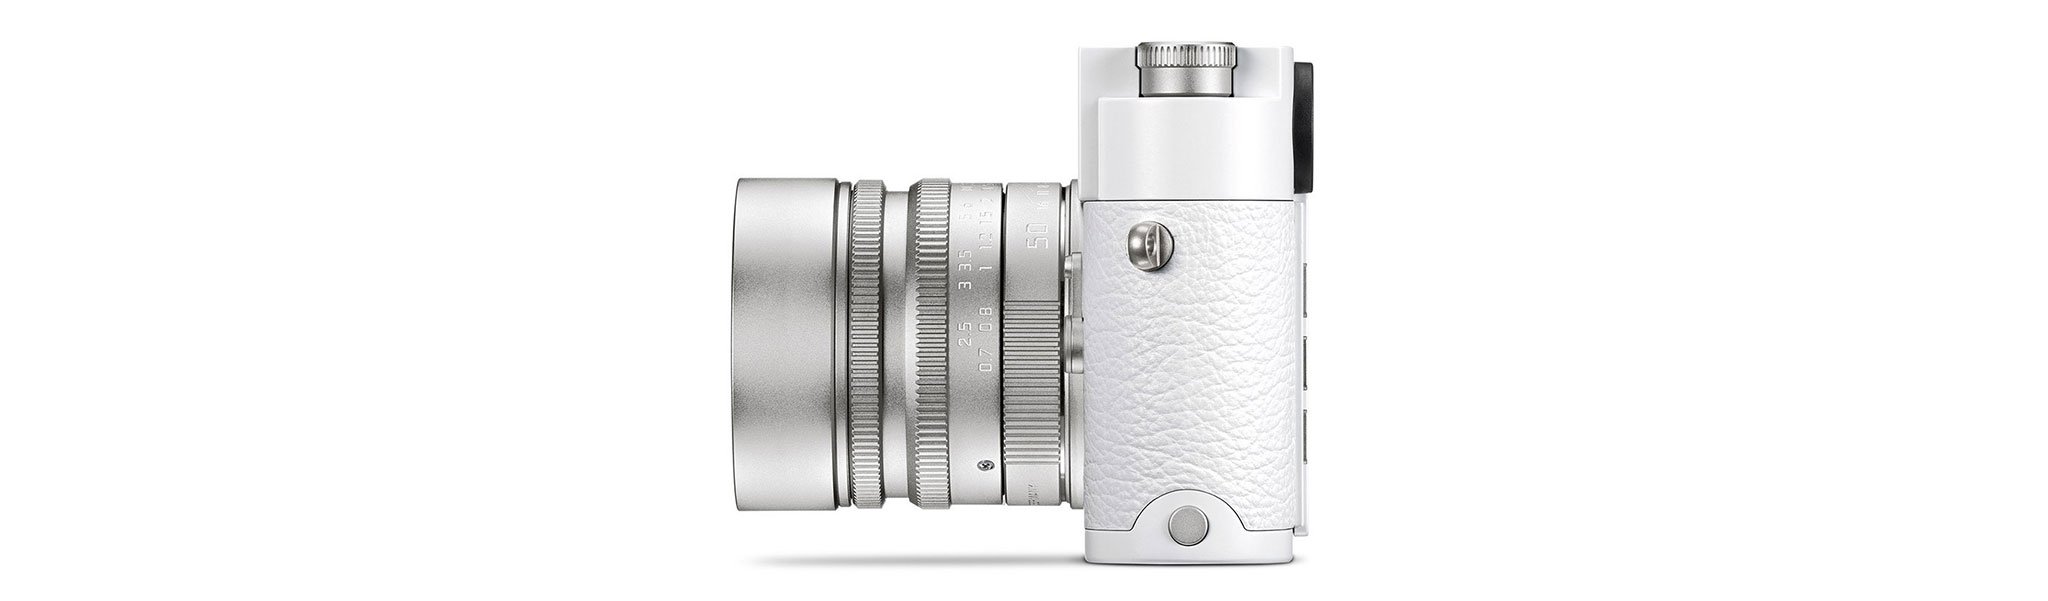 Leica ra mắt máy ảnh M10-P ‘White’ edition, phiên bản đặc biệt cho mùa đông cùng ống kính Summilux-M 50mm f/1.4 ASPH